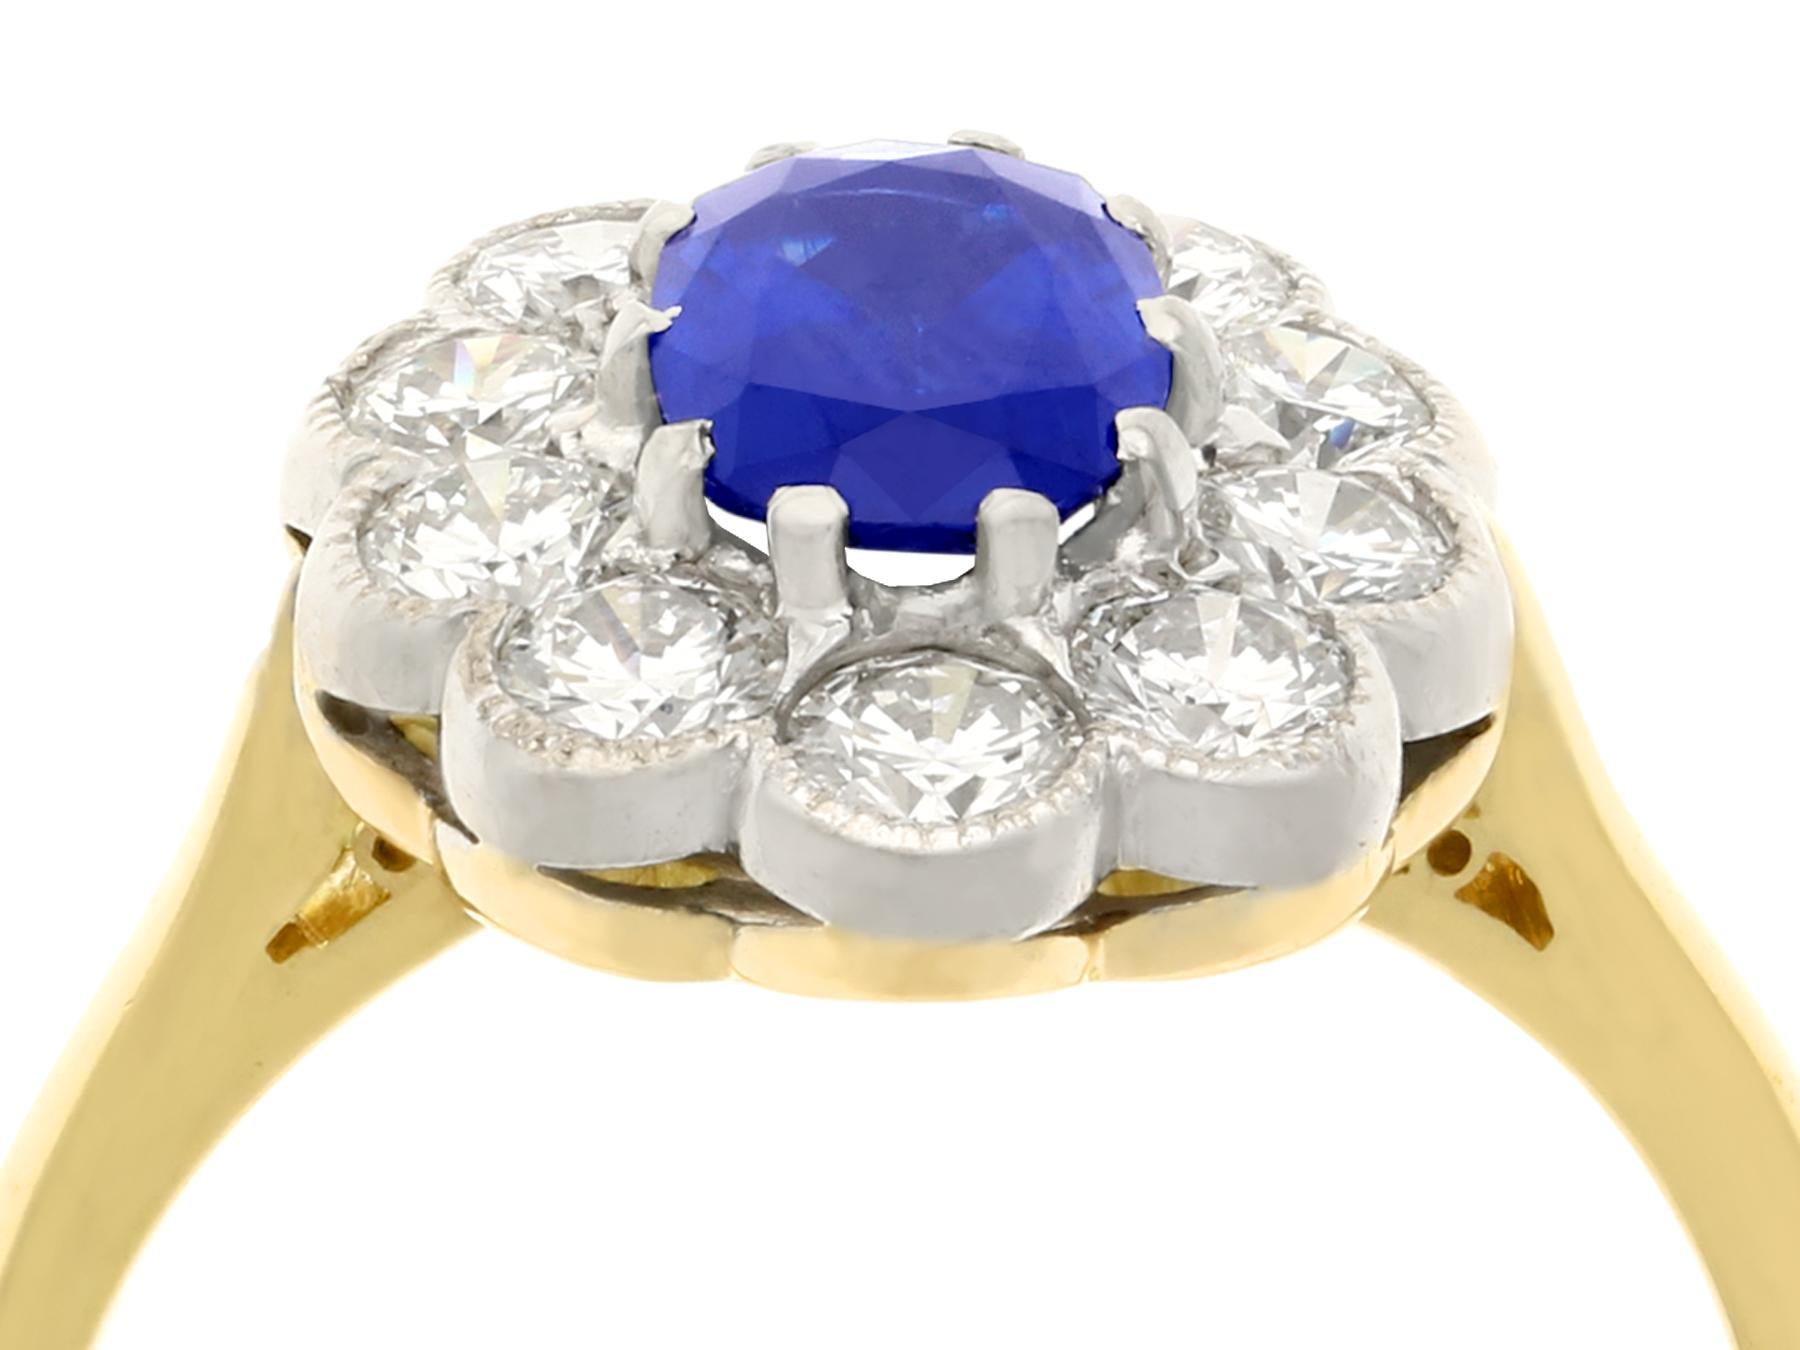 Ein atemberaubender Vintage 1,28 Karat Saphir und 1,30 Karat Diamant, 18 Karat Gelb- und Weißgold Cluster-Ring; Teil unserer vielfältigen Edelsteinschmuck und Nachlassschmuck Sammlungen.

Dieser atemberaubende, feine und beeindruckende Vintage-Ring